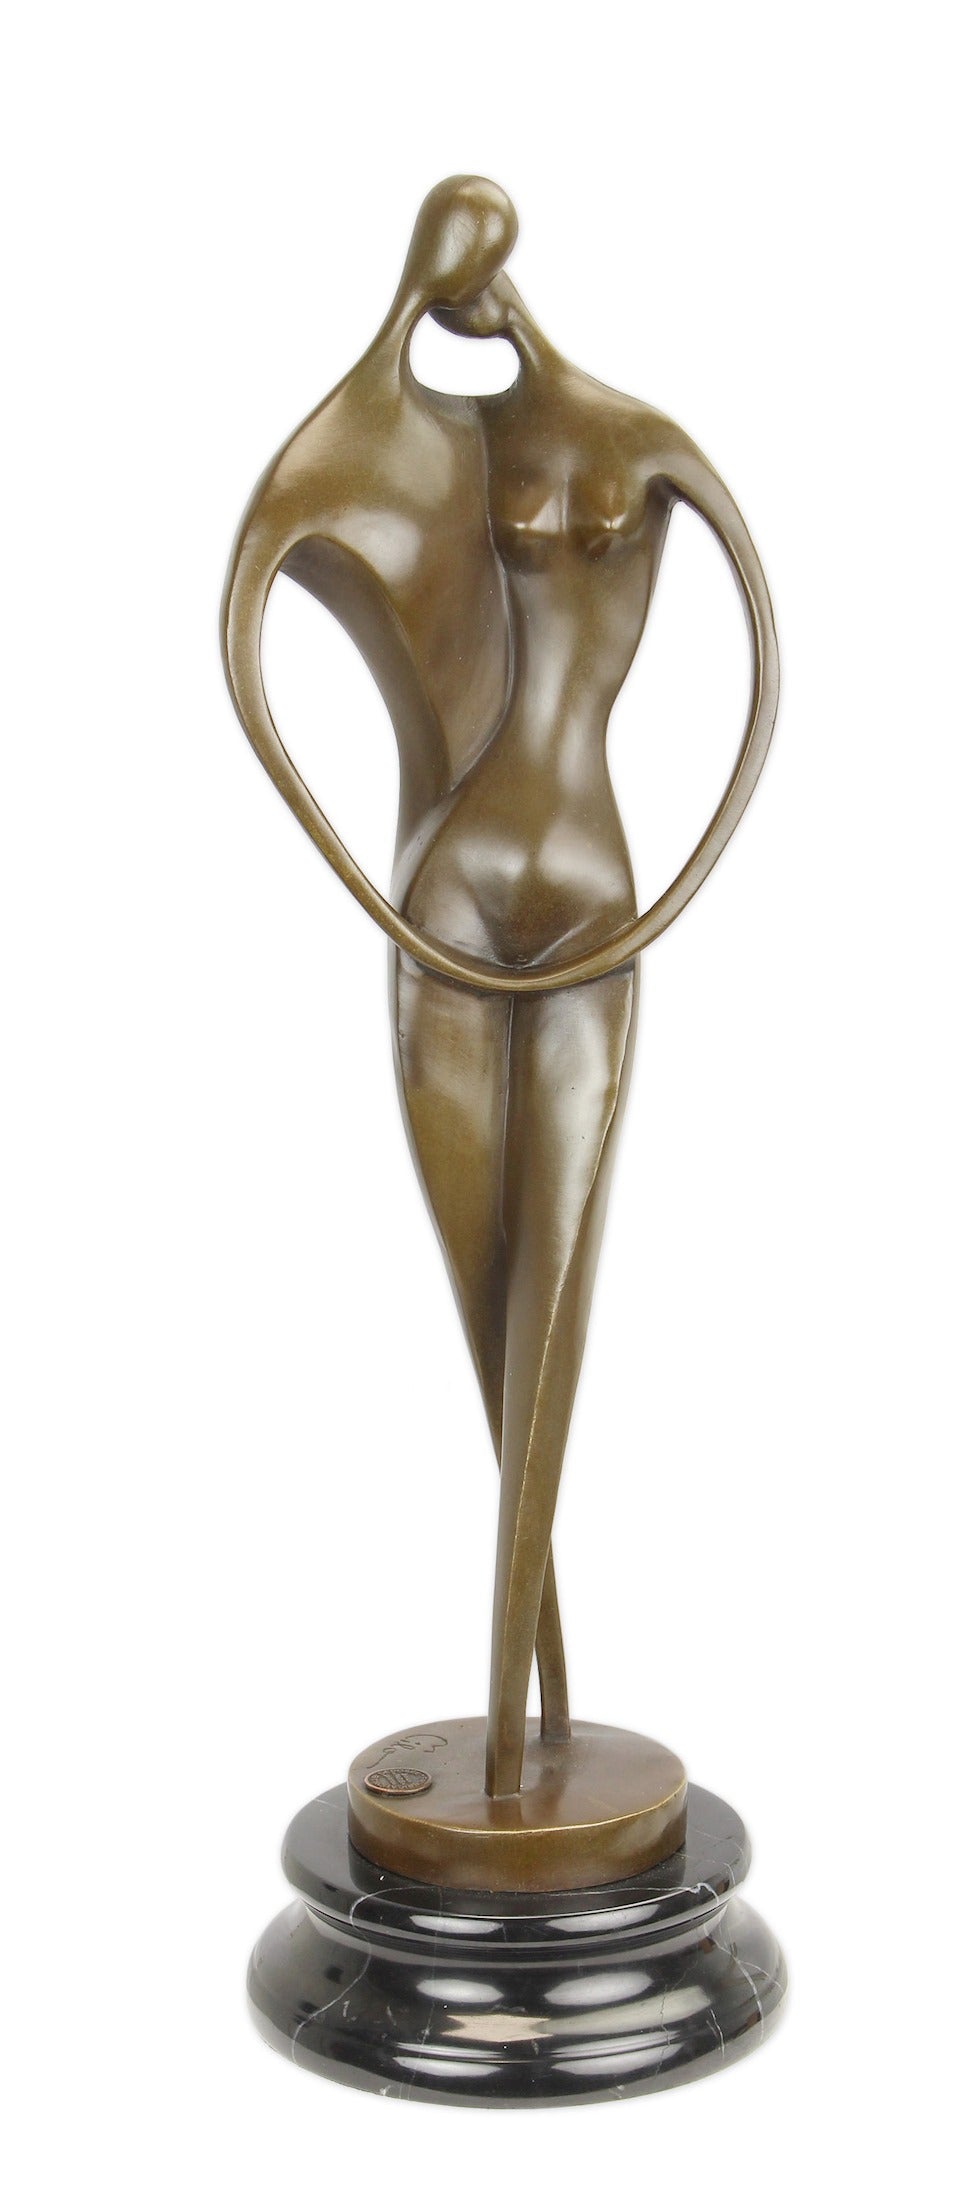 Bronzen beeld "Liefde" I 2.9 kg 41 x B: 12.8 L: 12.4 cm – Brons Beelden